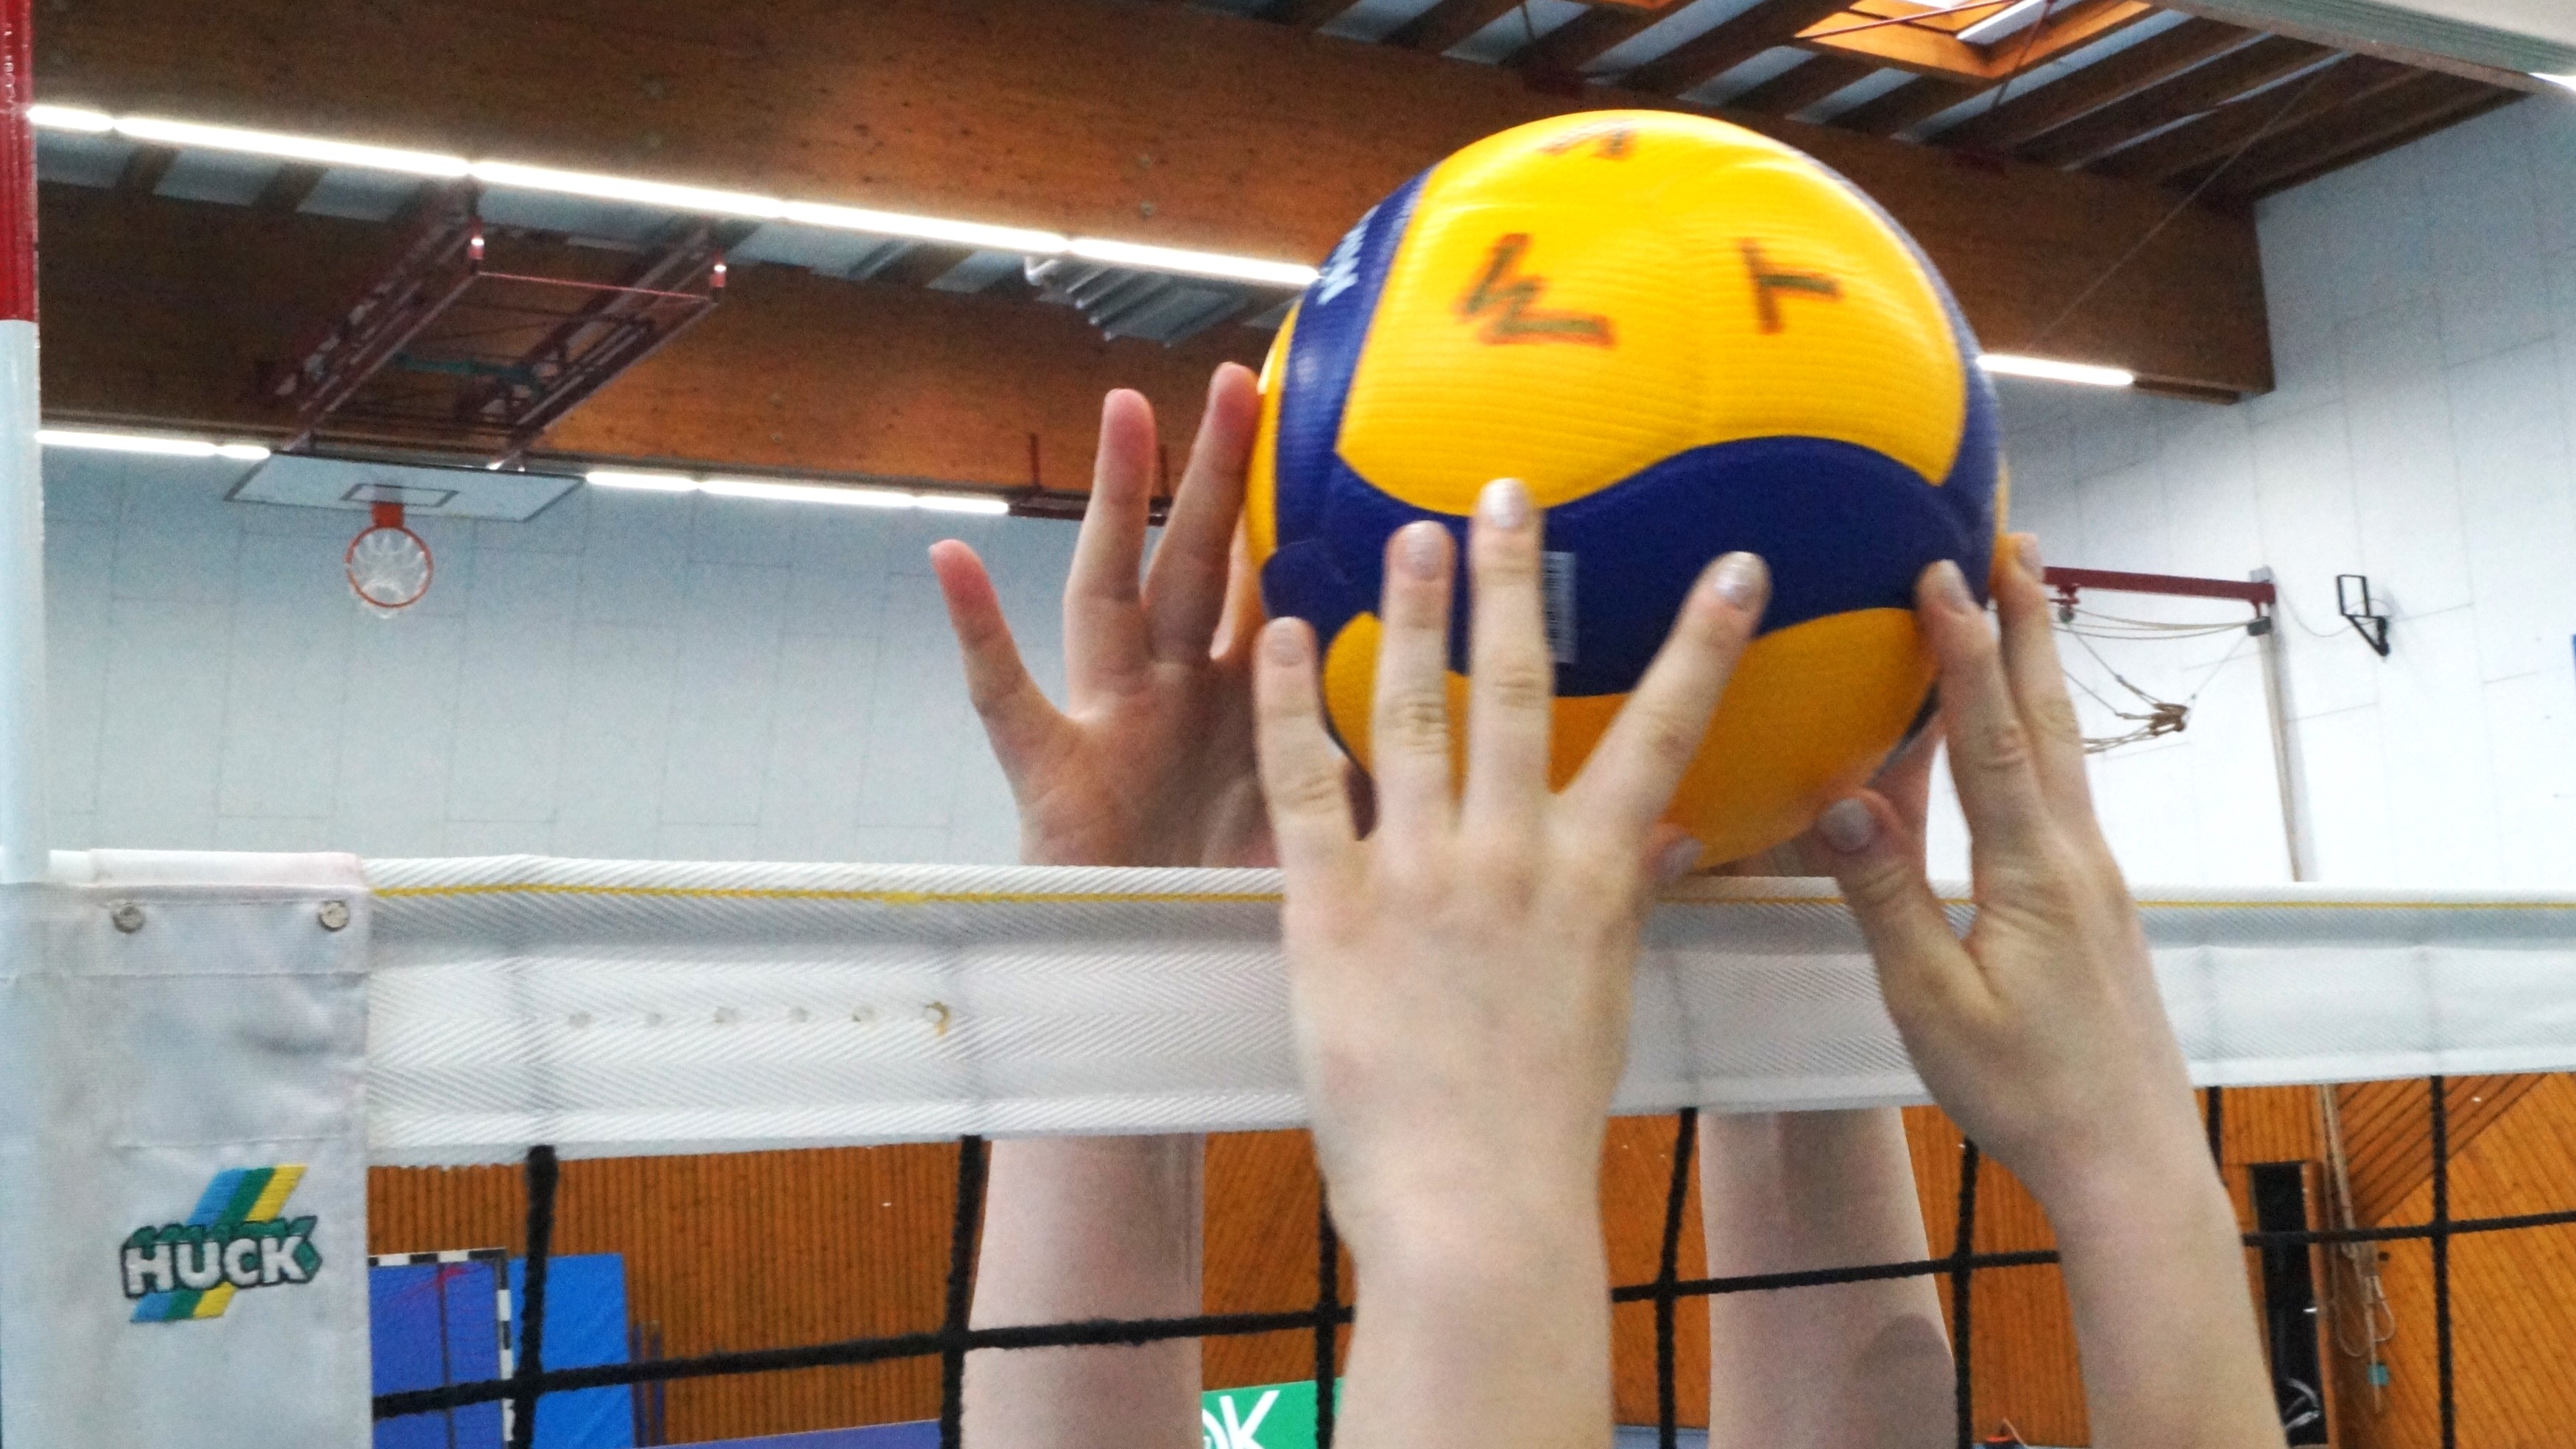 Bild zeigt eine Sporthalle, in der ein Volleyball über einem Volleyballnetz von zwei Händen berührt wird. Ball mit Bezeichnung "M T V". 